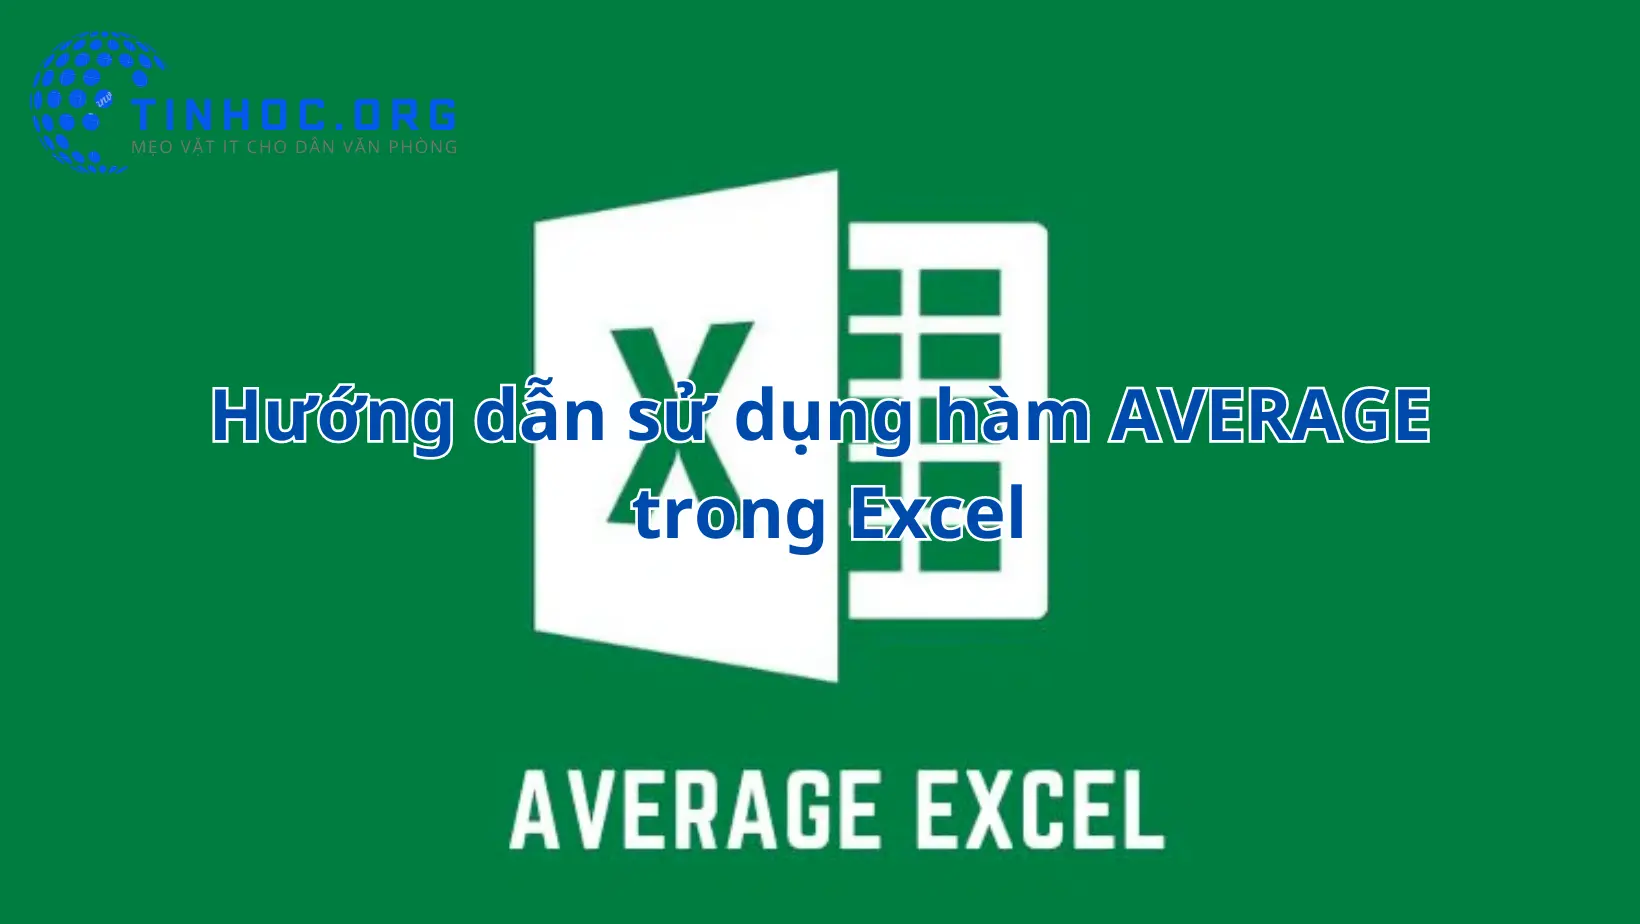 Hàm AVERAGE trong Microsoft Excel là một công cụ mạnh mẽ giúp bạn tính giá trị trung bình của một loạt các số nhanh chóng và dễ dàng.